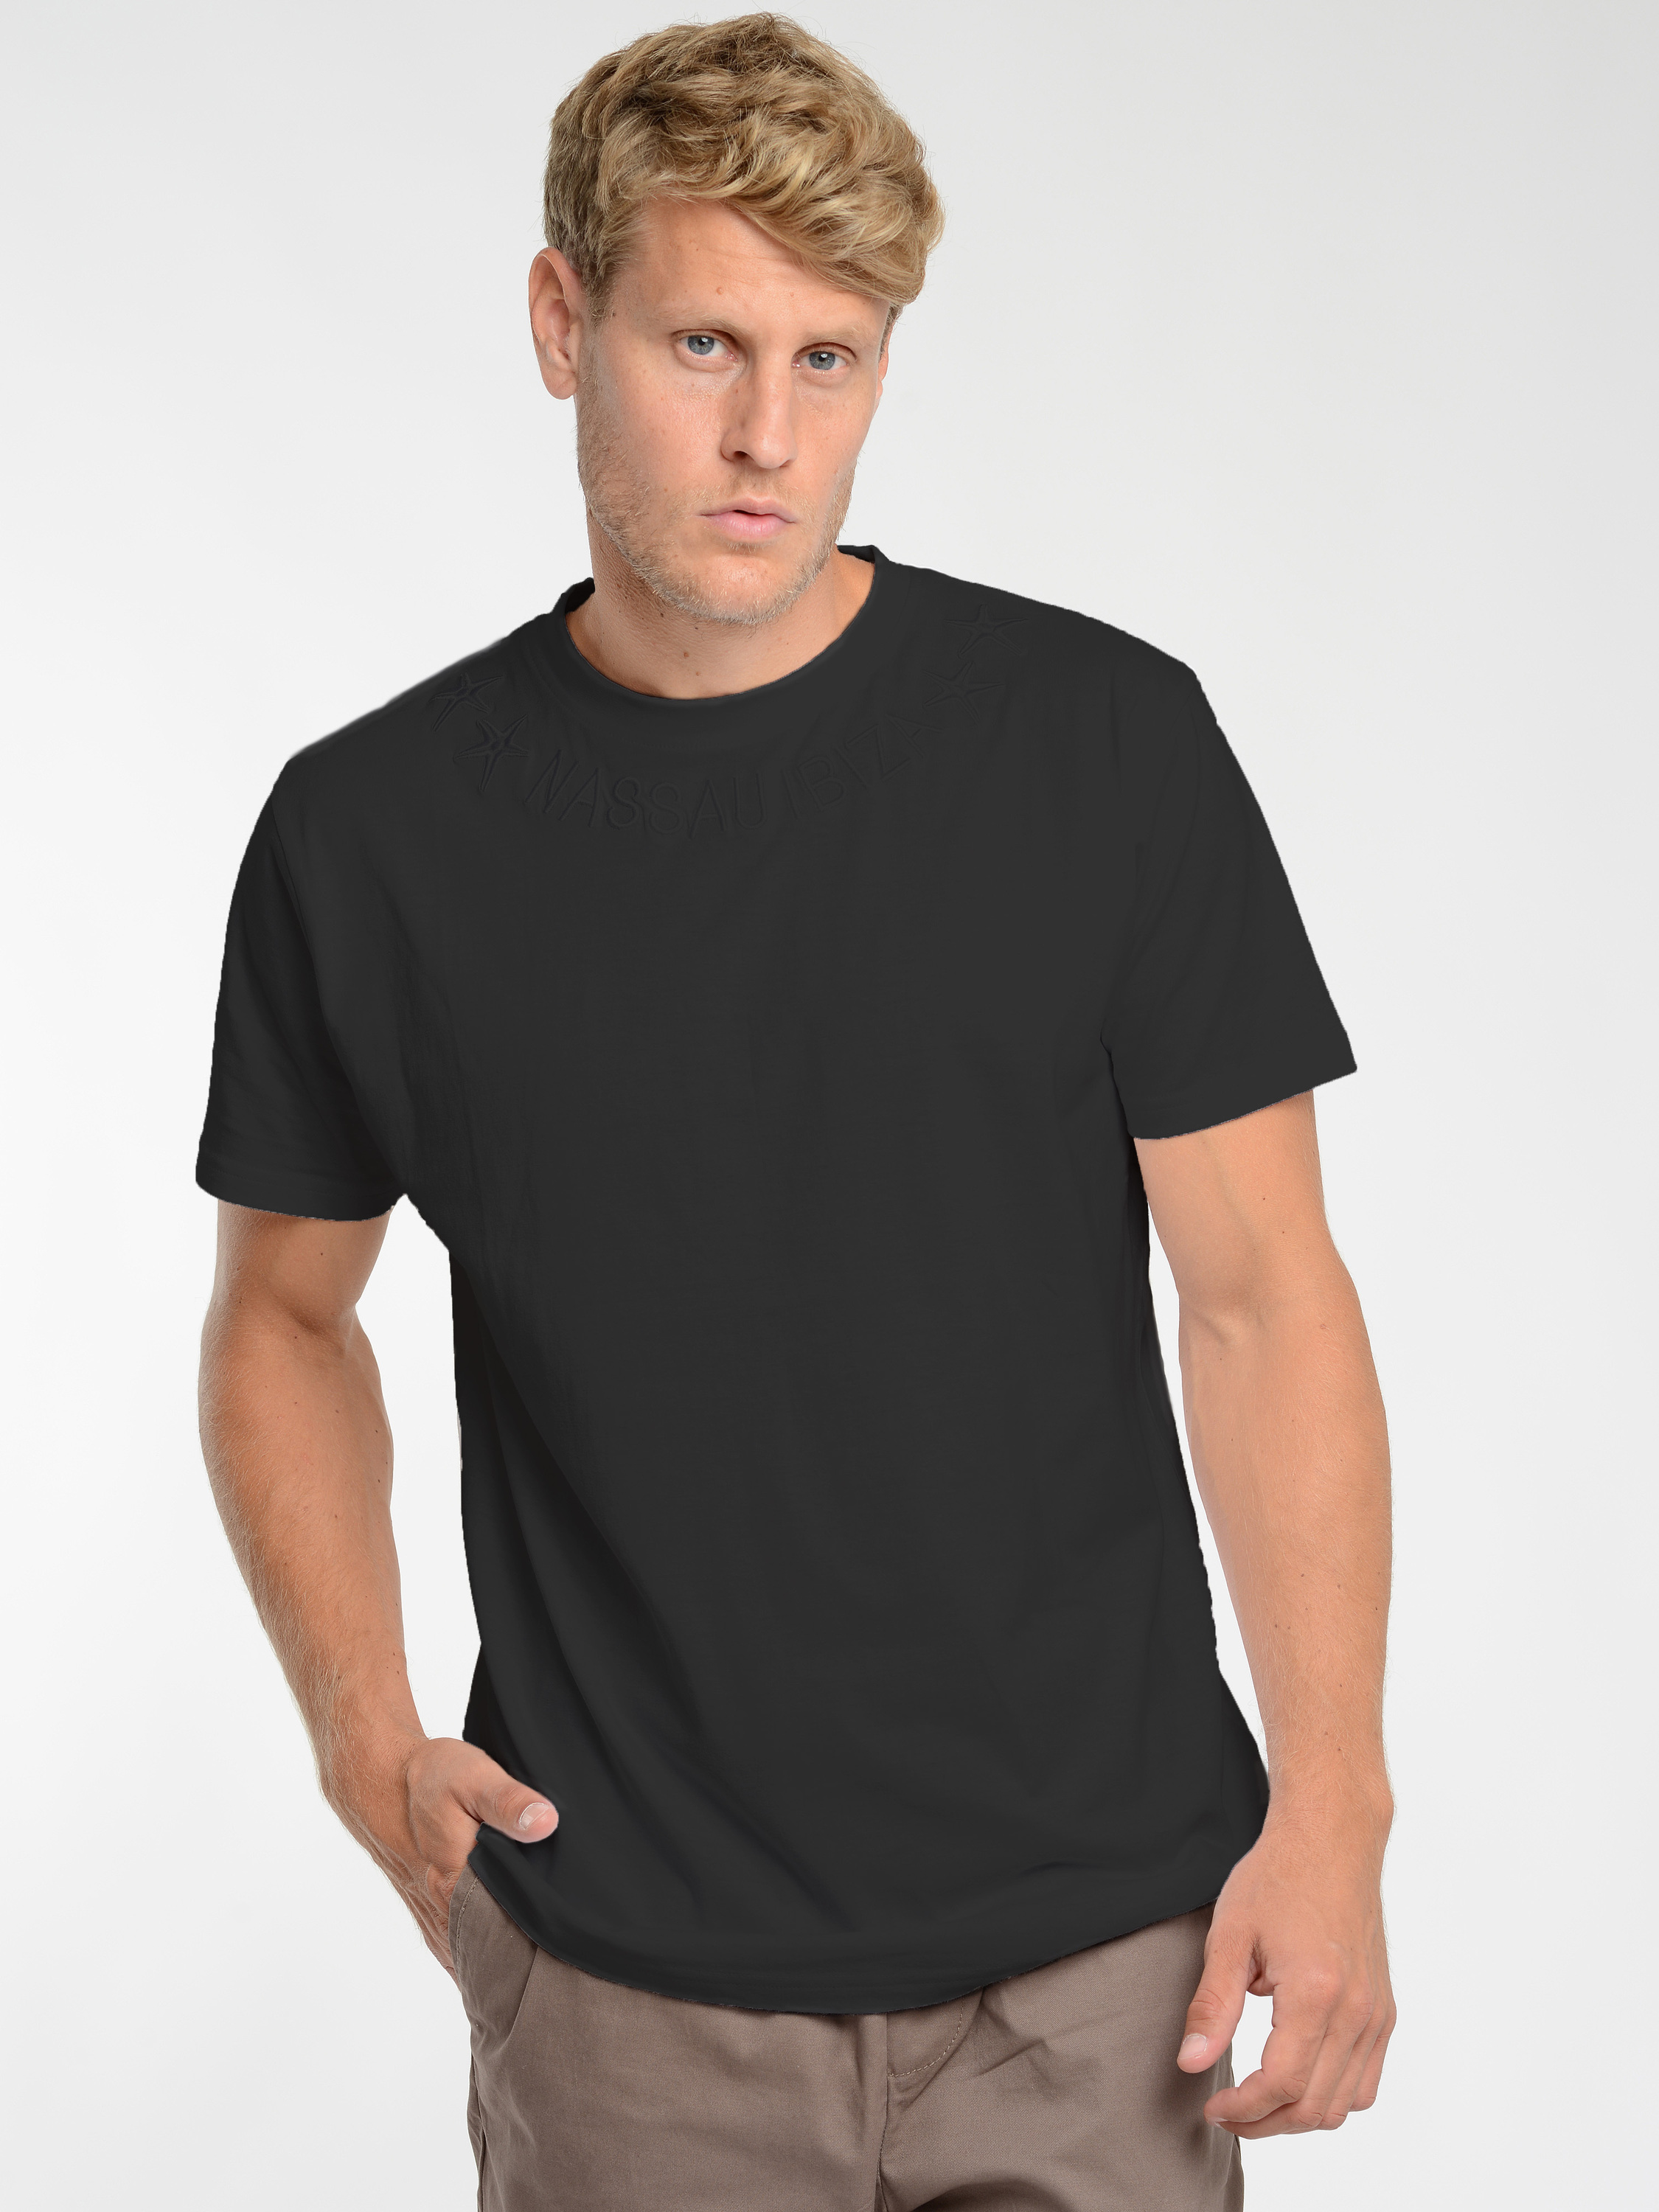  Nassau Beach T-Shirt 22013 